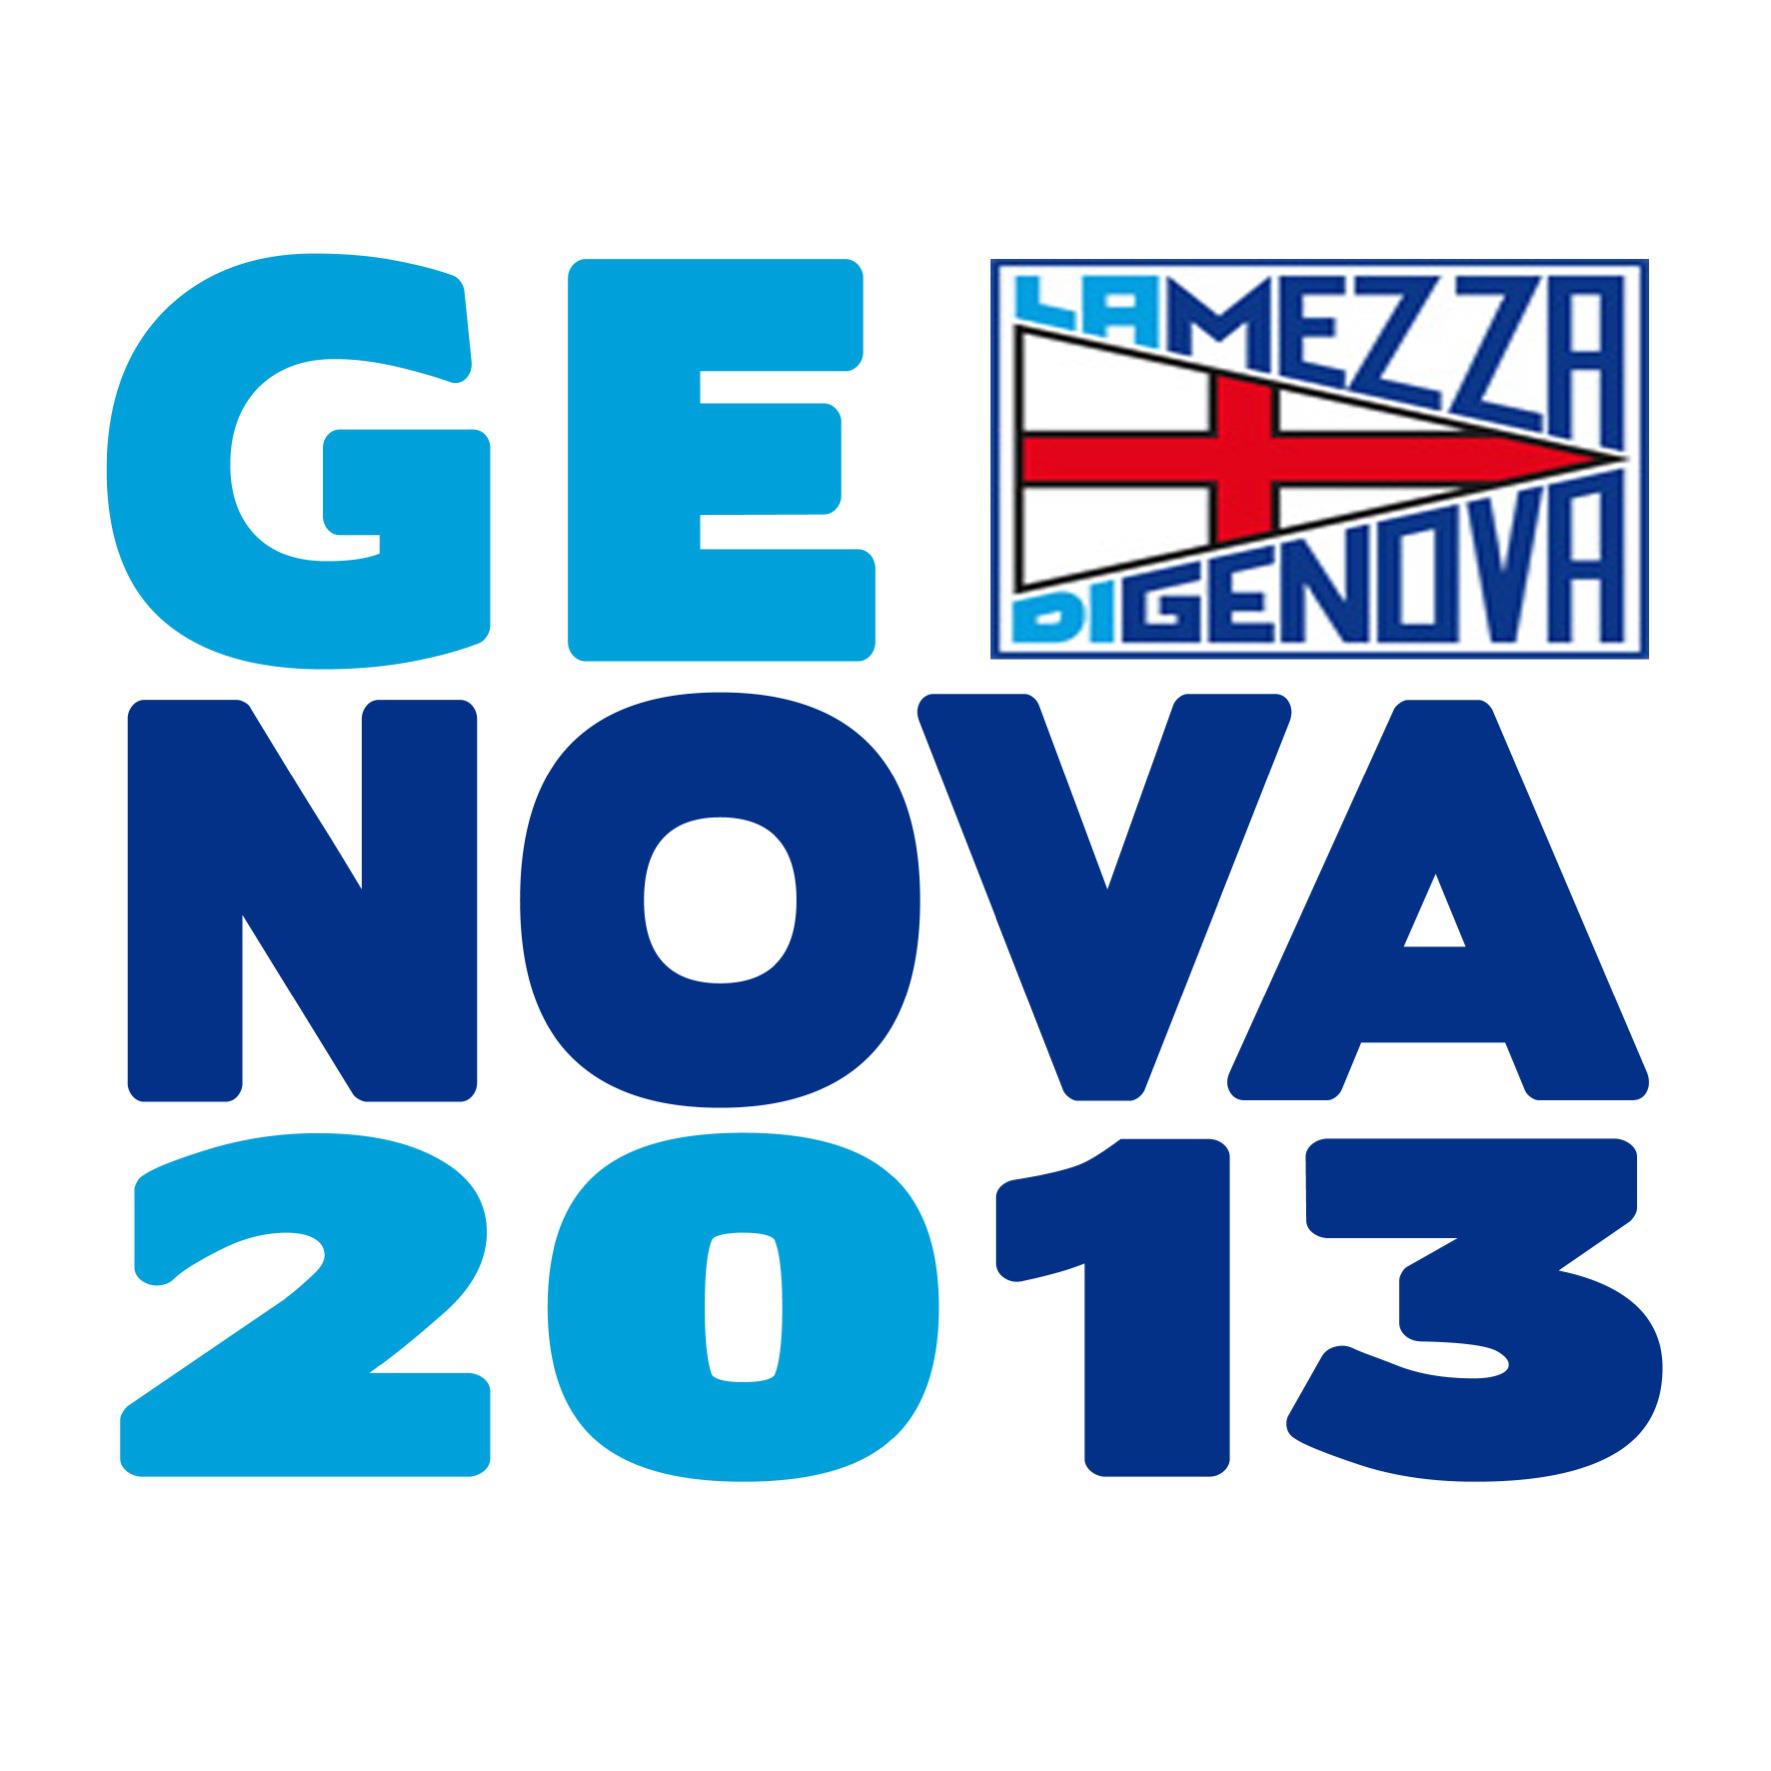 La Mezza Di Genova 2013